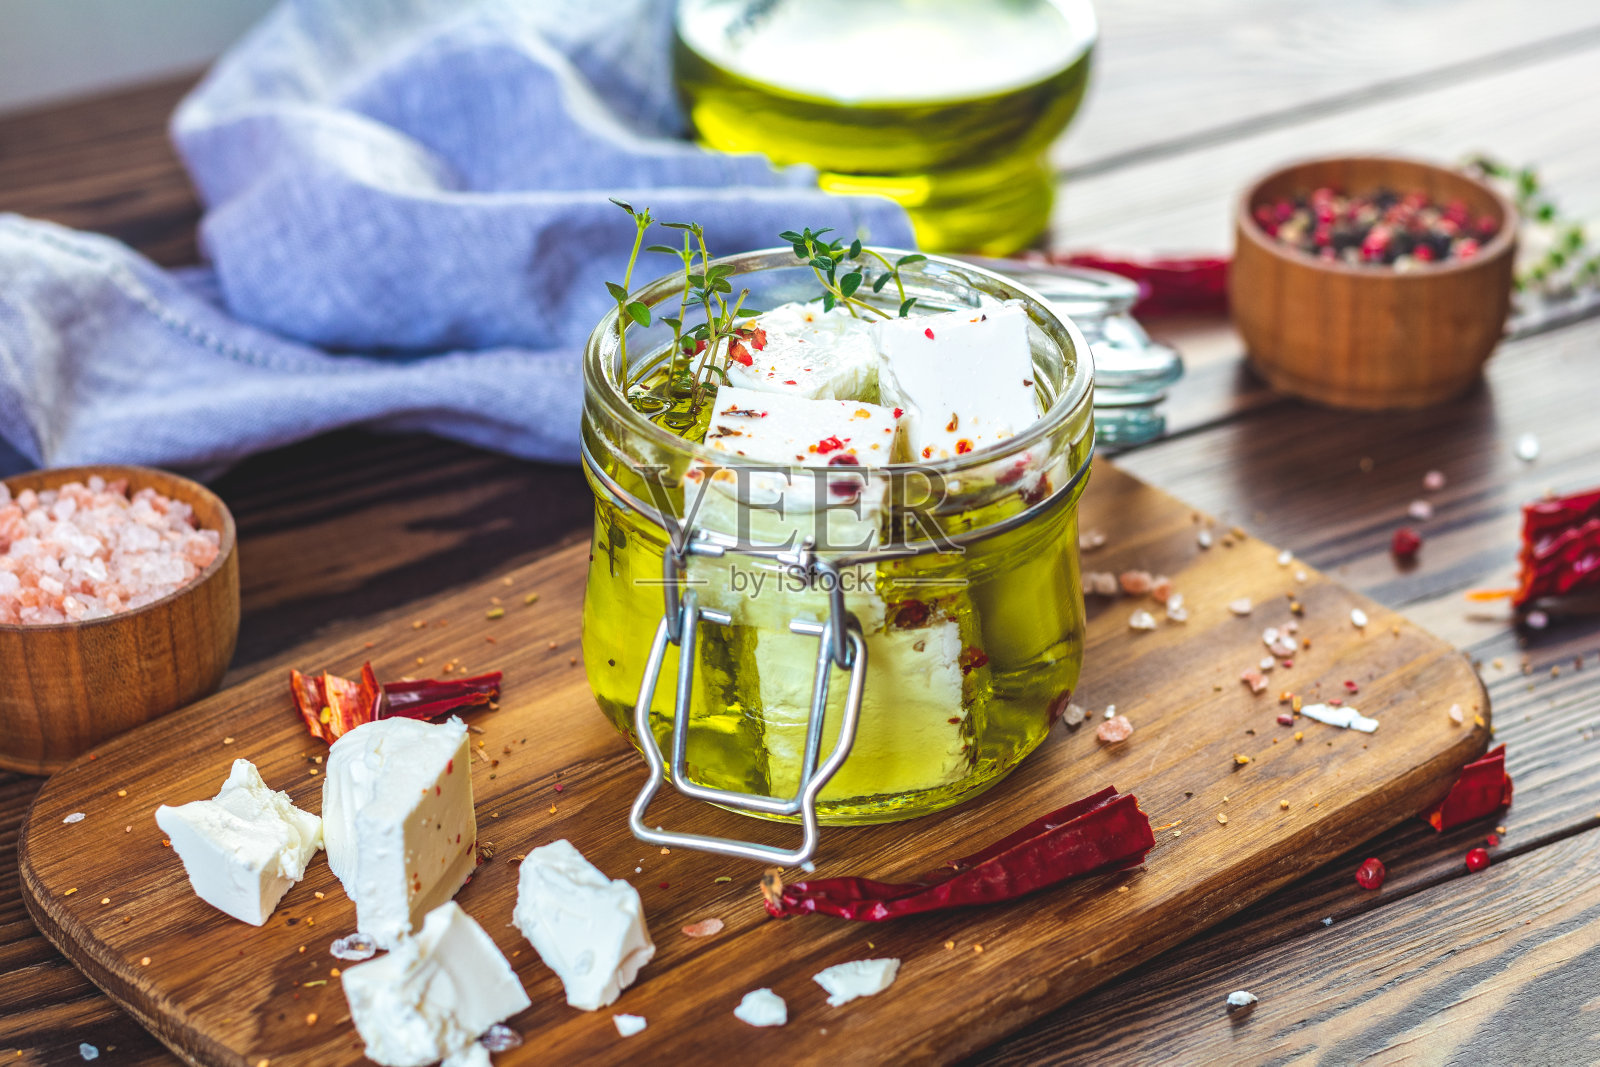 玻璃罐中橄榄油浸泡的菲达奶酪照片摄影图片